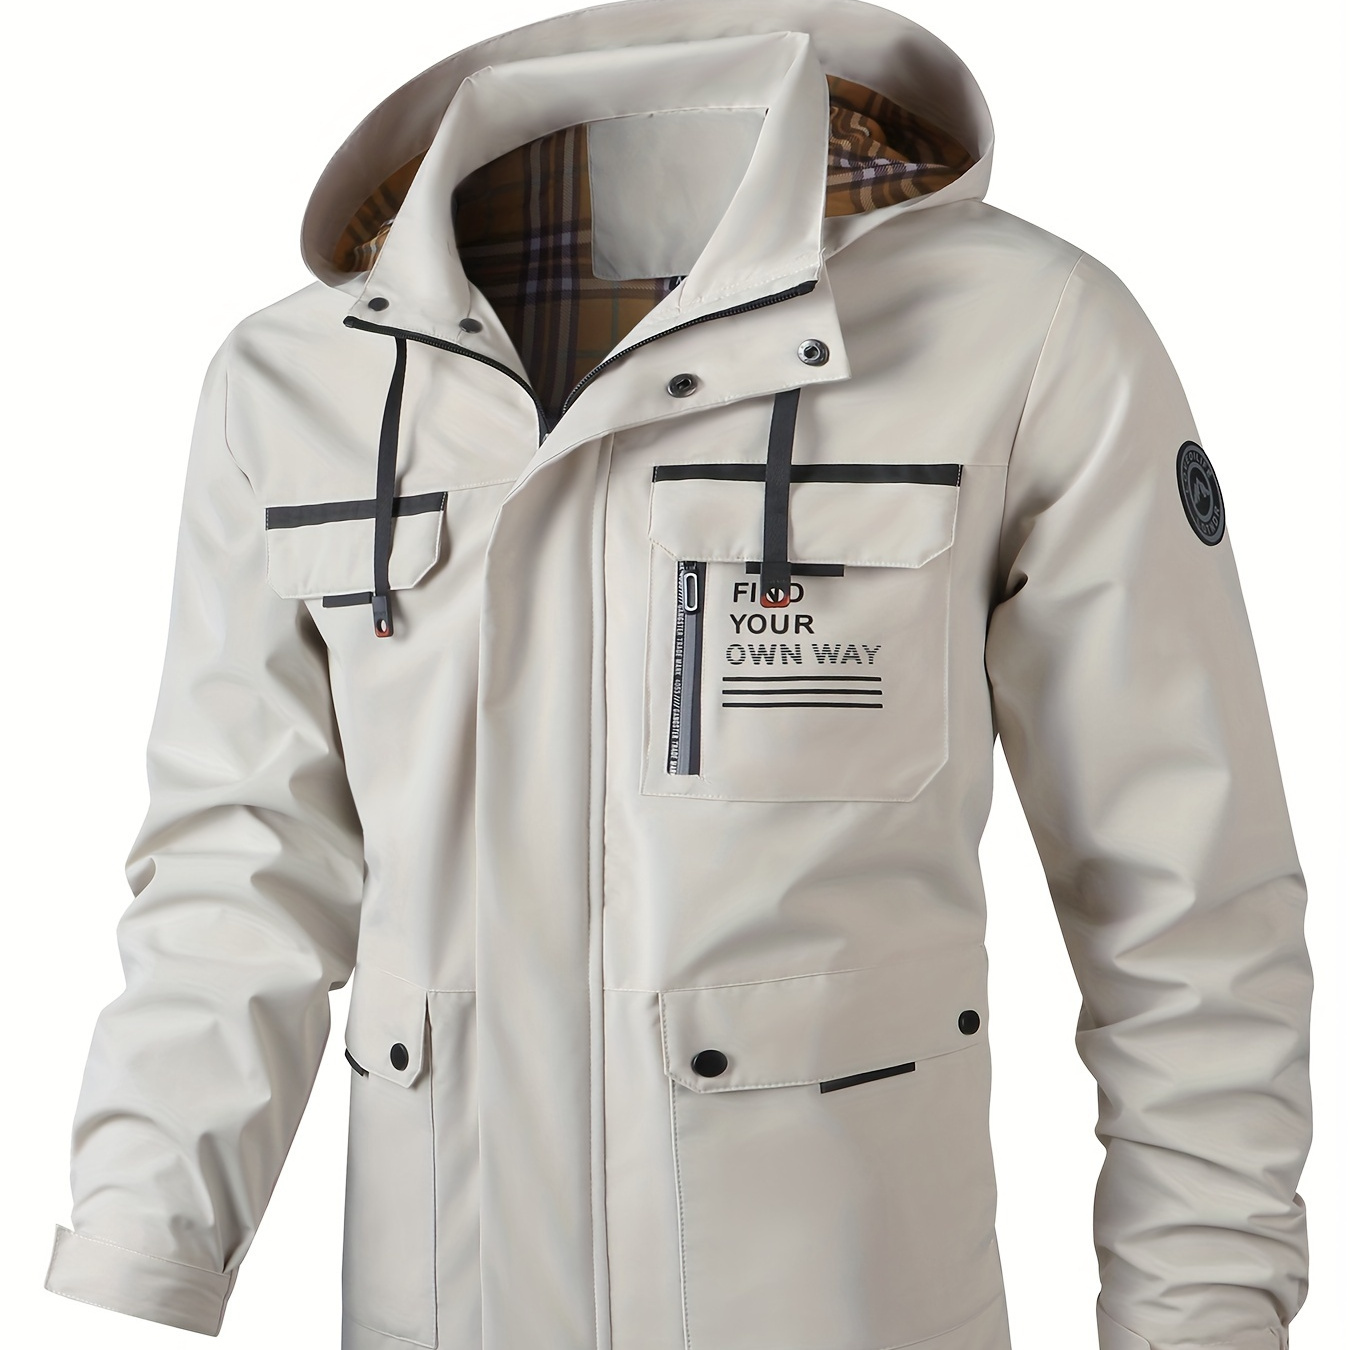 

Men's Stylish Multi-pocket Waterproof Hooded Windbreaker Casual Jacket For Winter Fall Outdoor